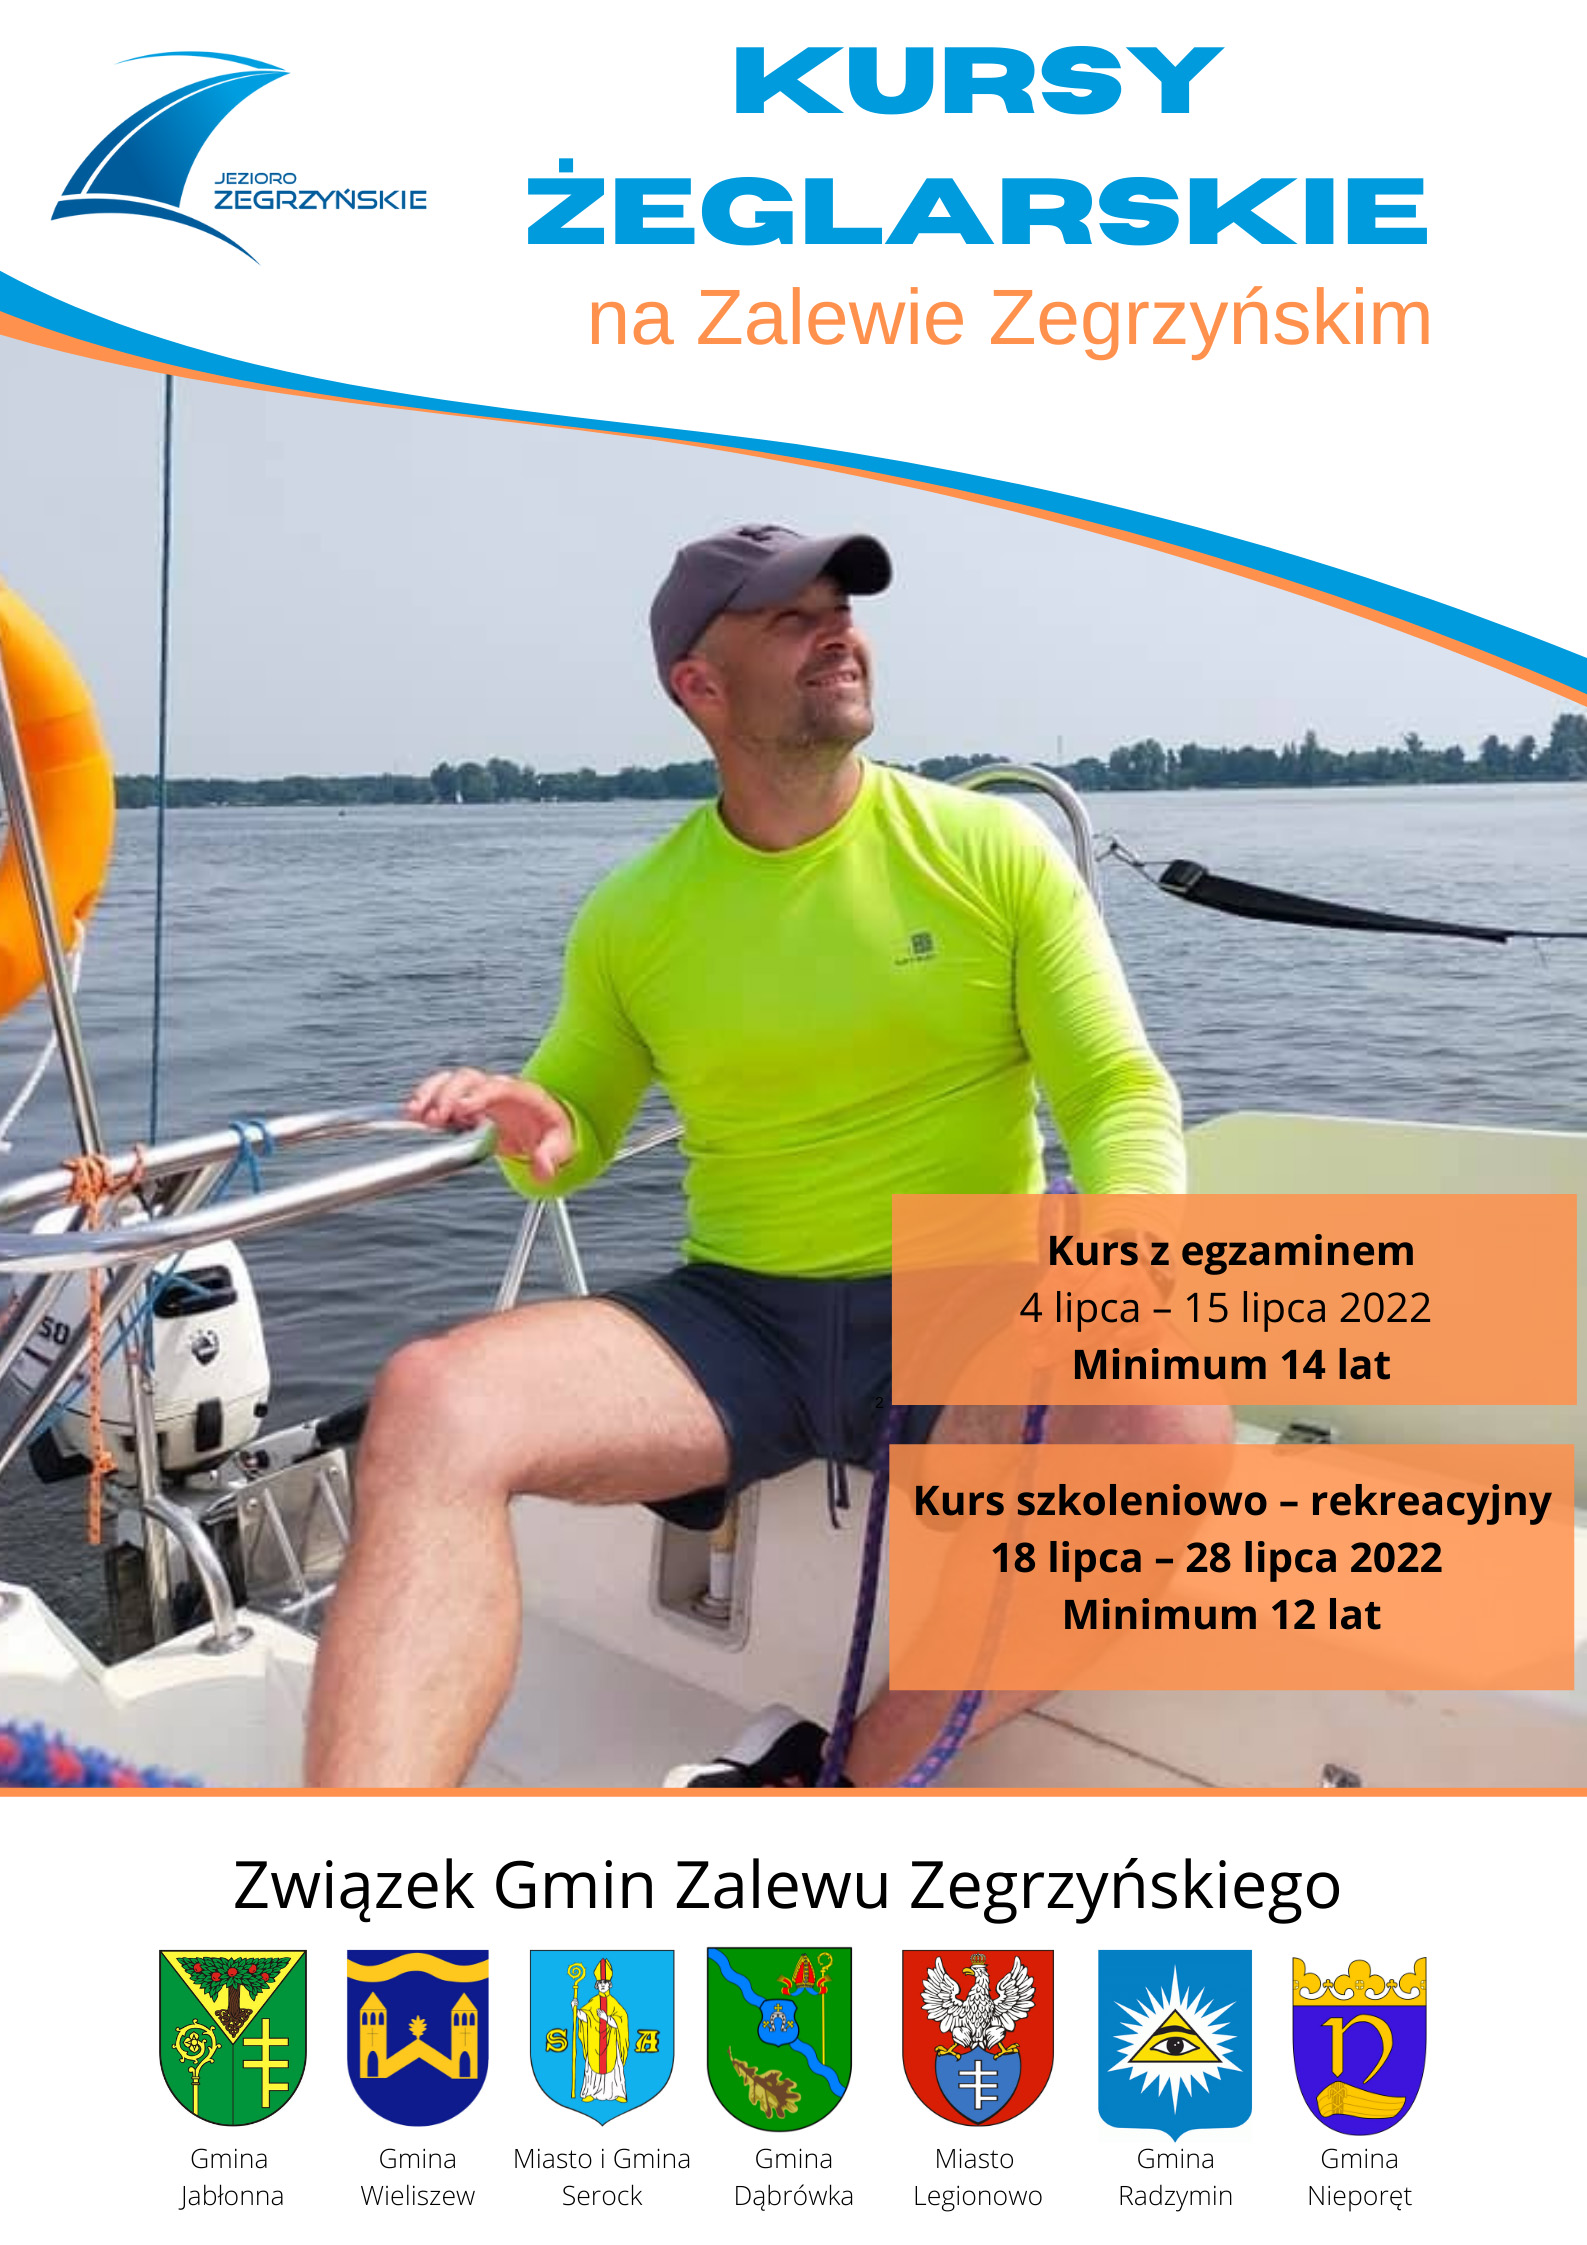 Plakat informujący o kursach żeglarskich